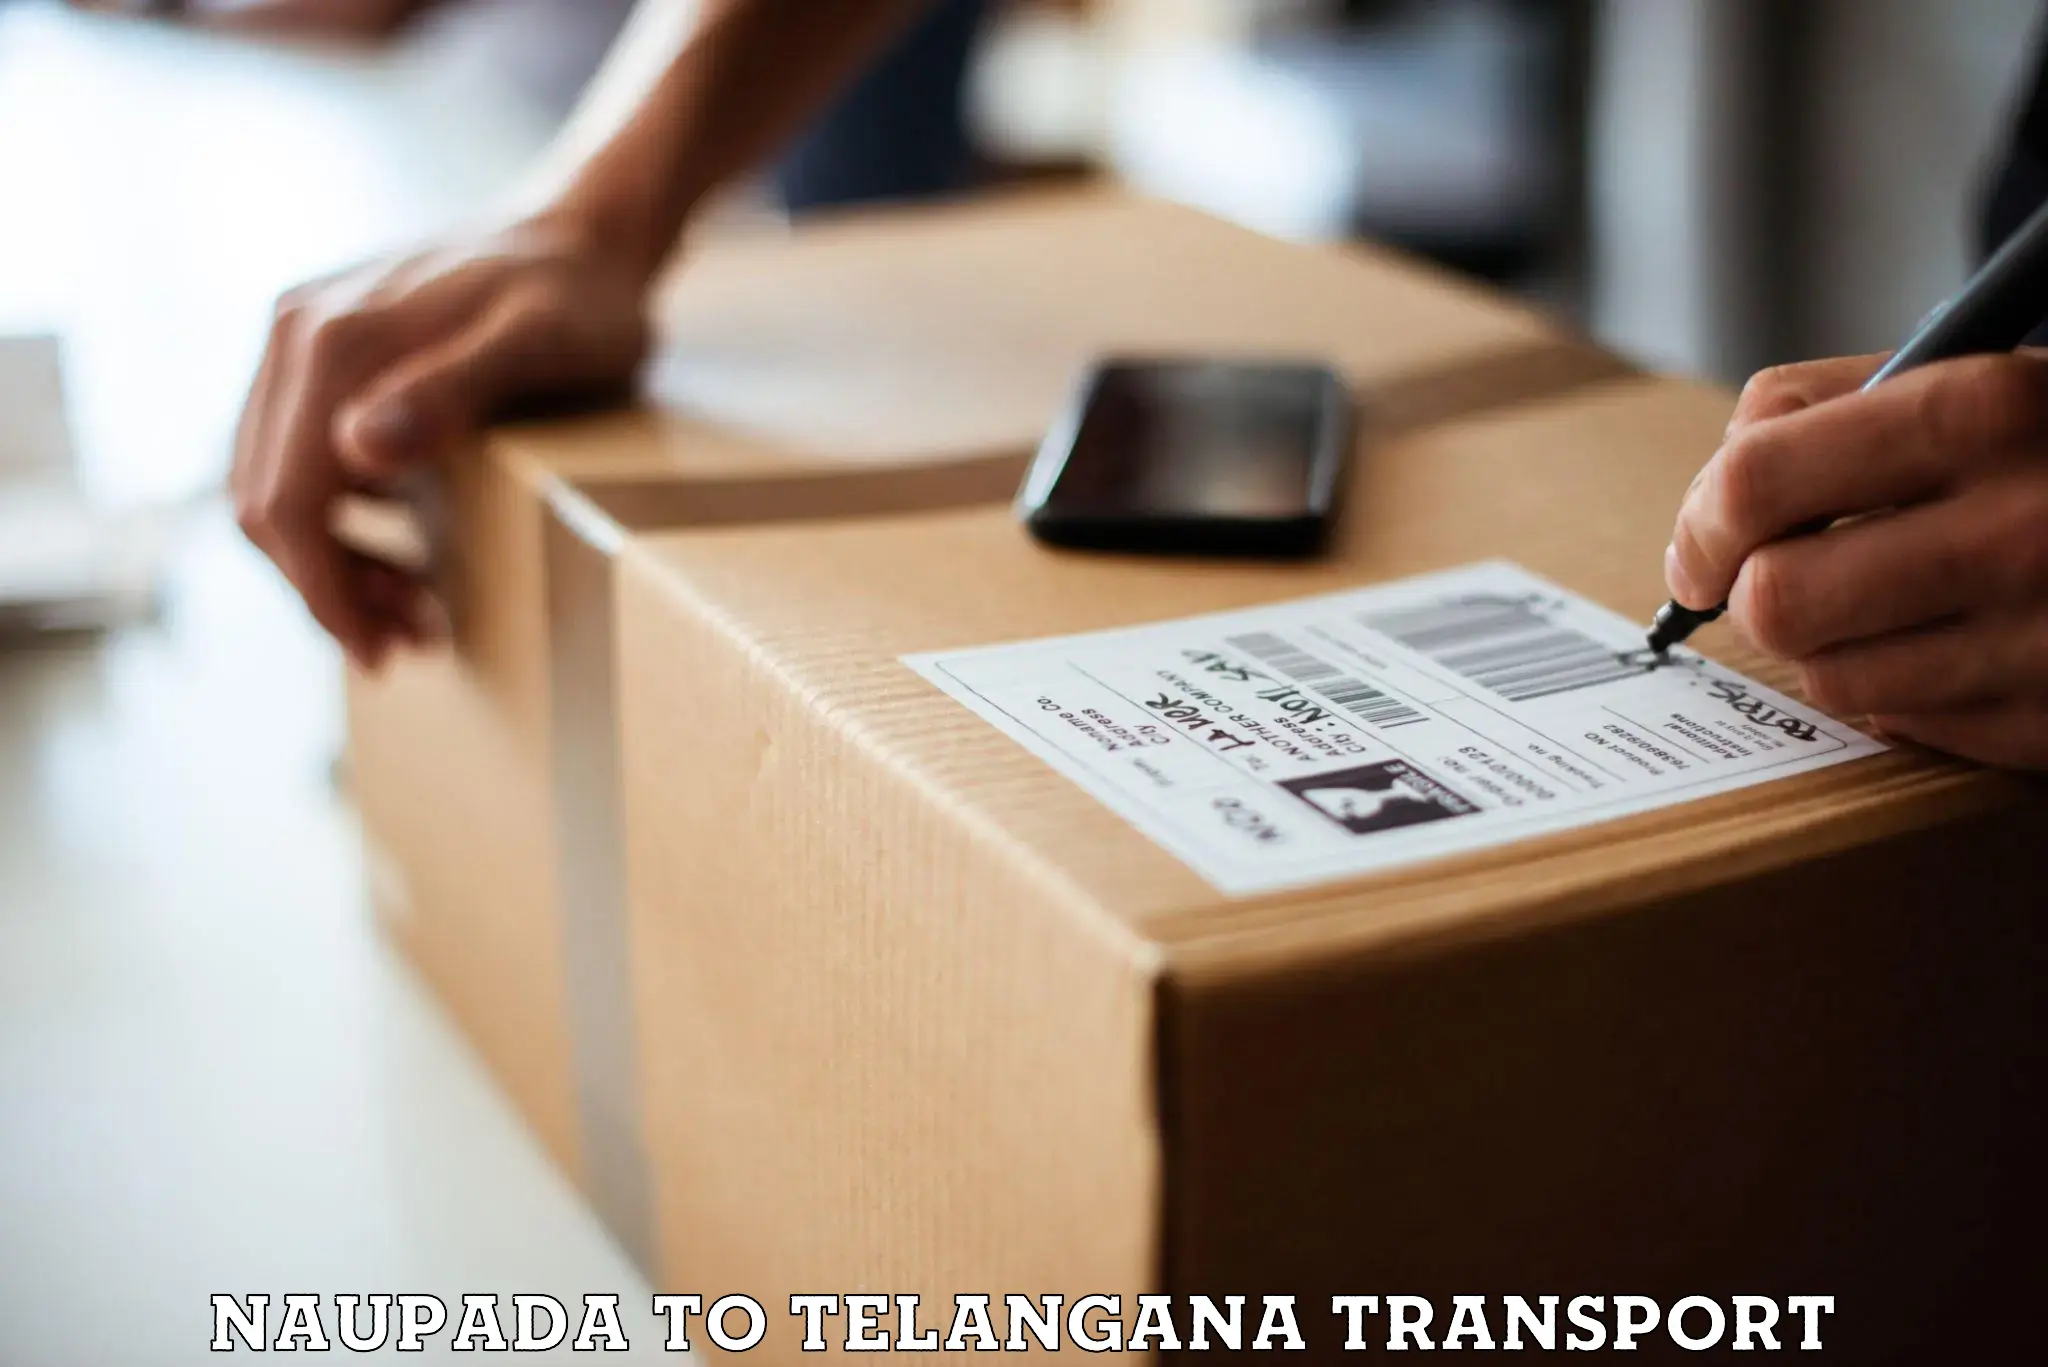 Express transport services Naupada to Telangana